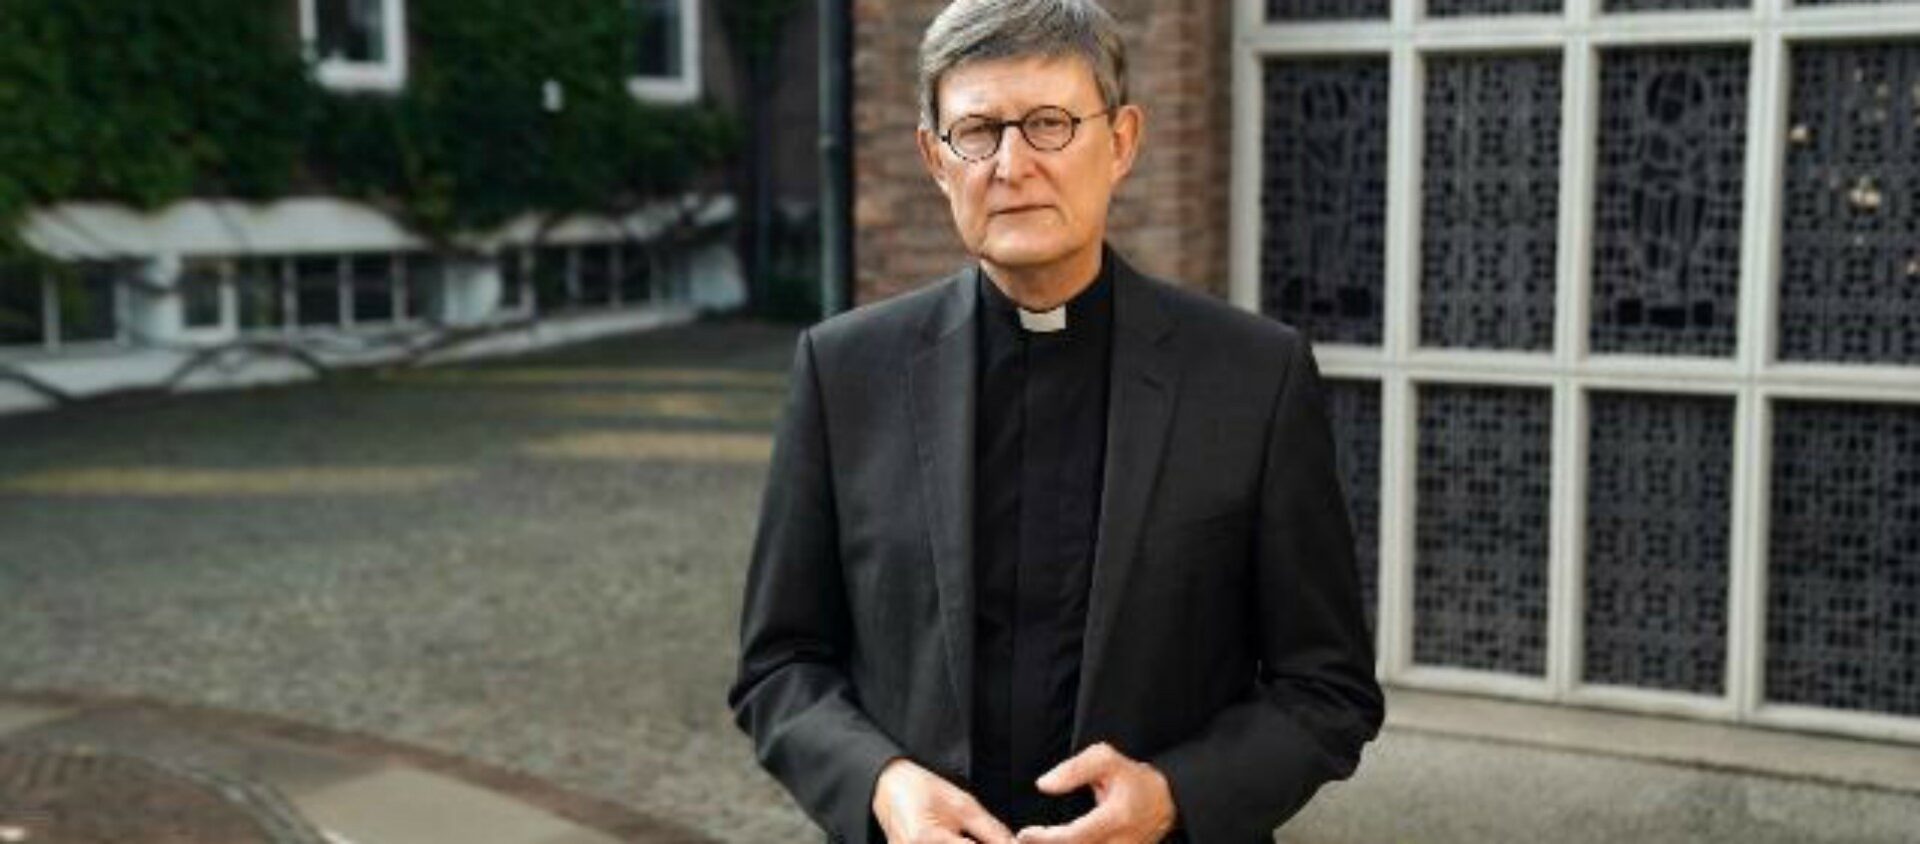 Le cardinal Rainer Maria Woelki, archevêque de Cologne, a été le premier évêque allemand à commander une enquête sur les abus sexuels dans son diocèse, mais le seul à refuser de la publier pour l’instant. | © Erzbistum Köln